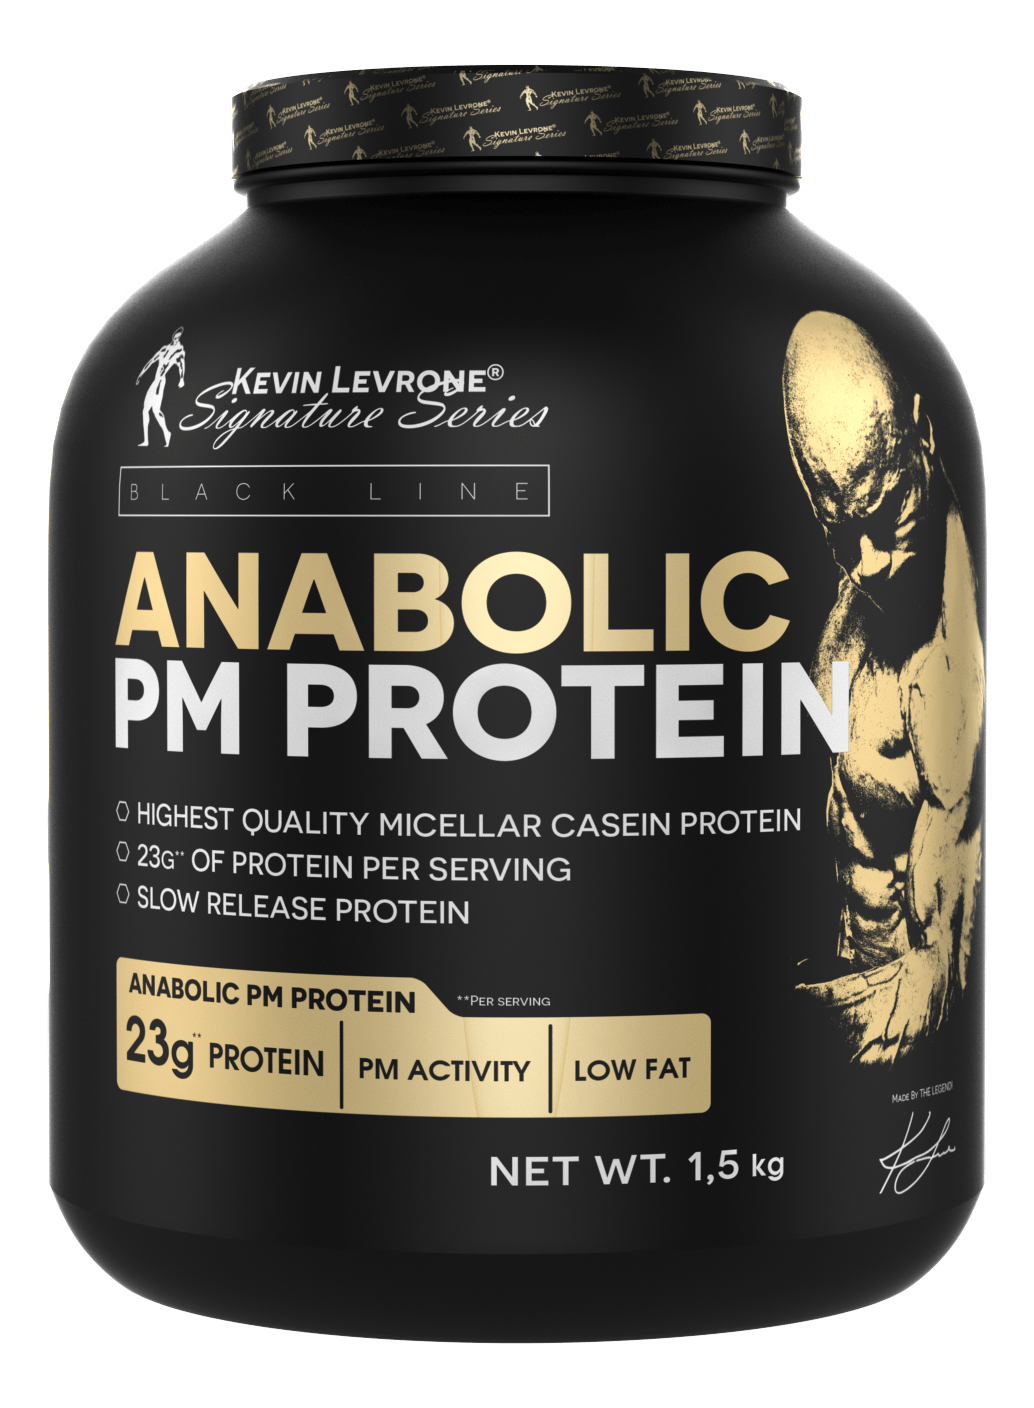 Протеин Kevin Levrone Anabolic PM Protein, 1.5 кг Ваниль,  мл, Kevin Levrone. Протеин. Набор массы Восстановление Антикатаболические свойства 